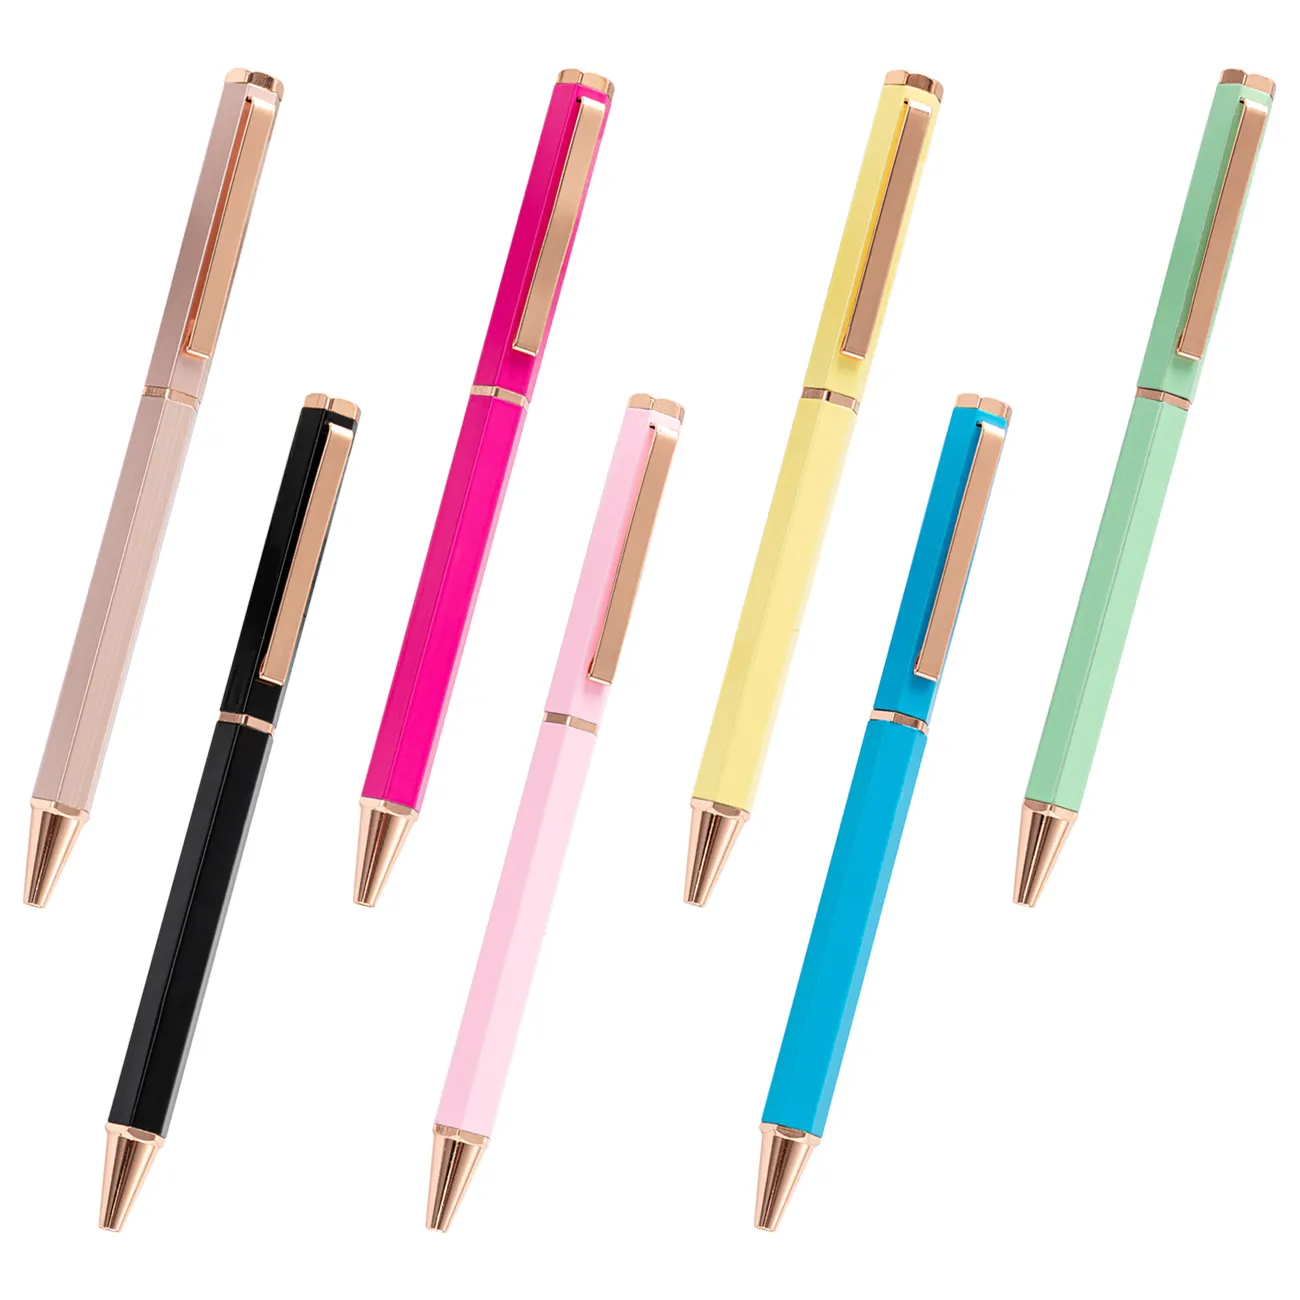 새로운 육각 볼펜 도매 간단한 마카롱 금속 펜 레이저 로고 높은 외관 중간 오일 펜